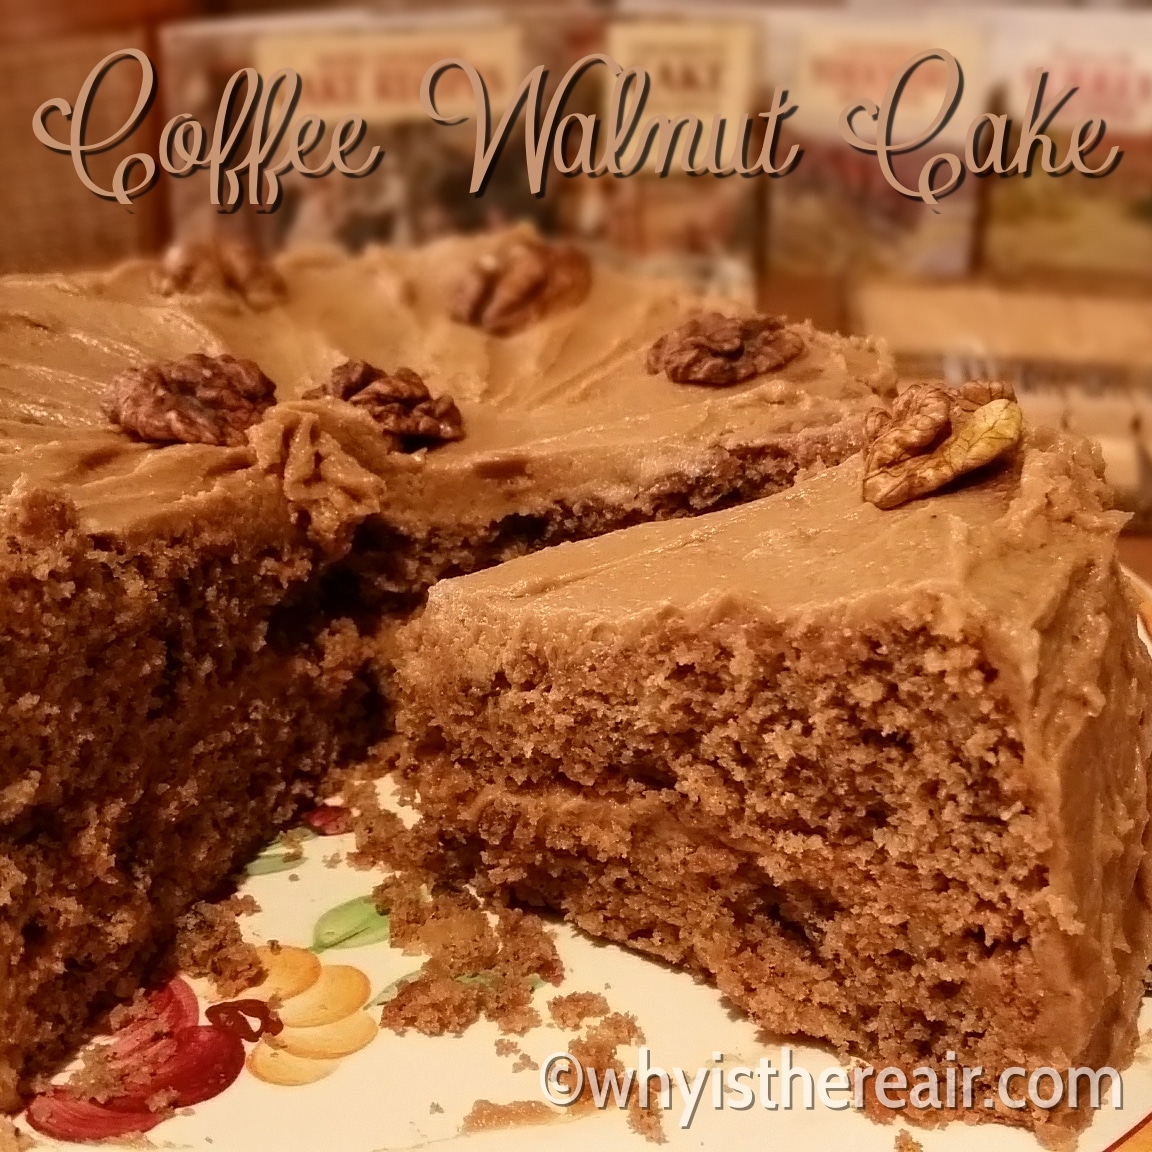 Coffee Walnut Cake